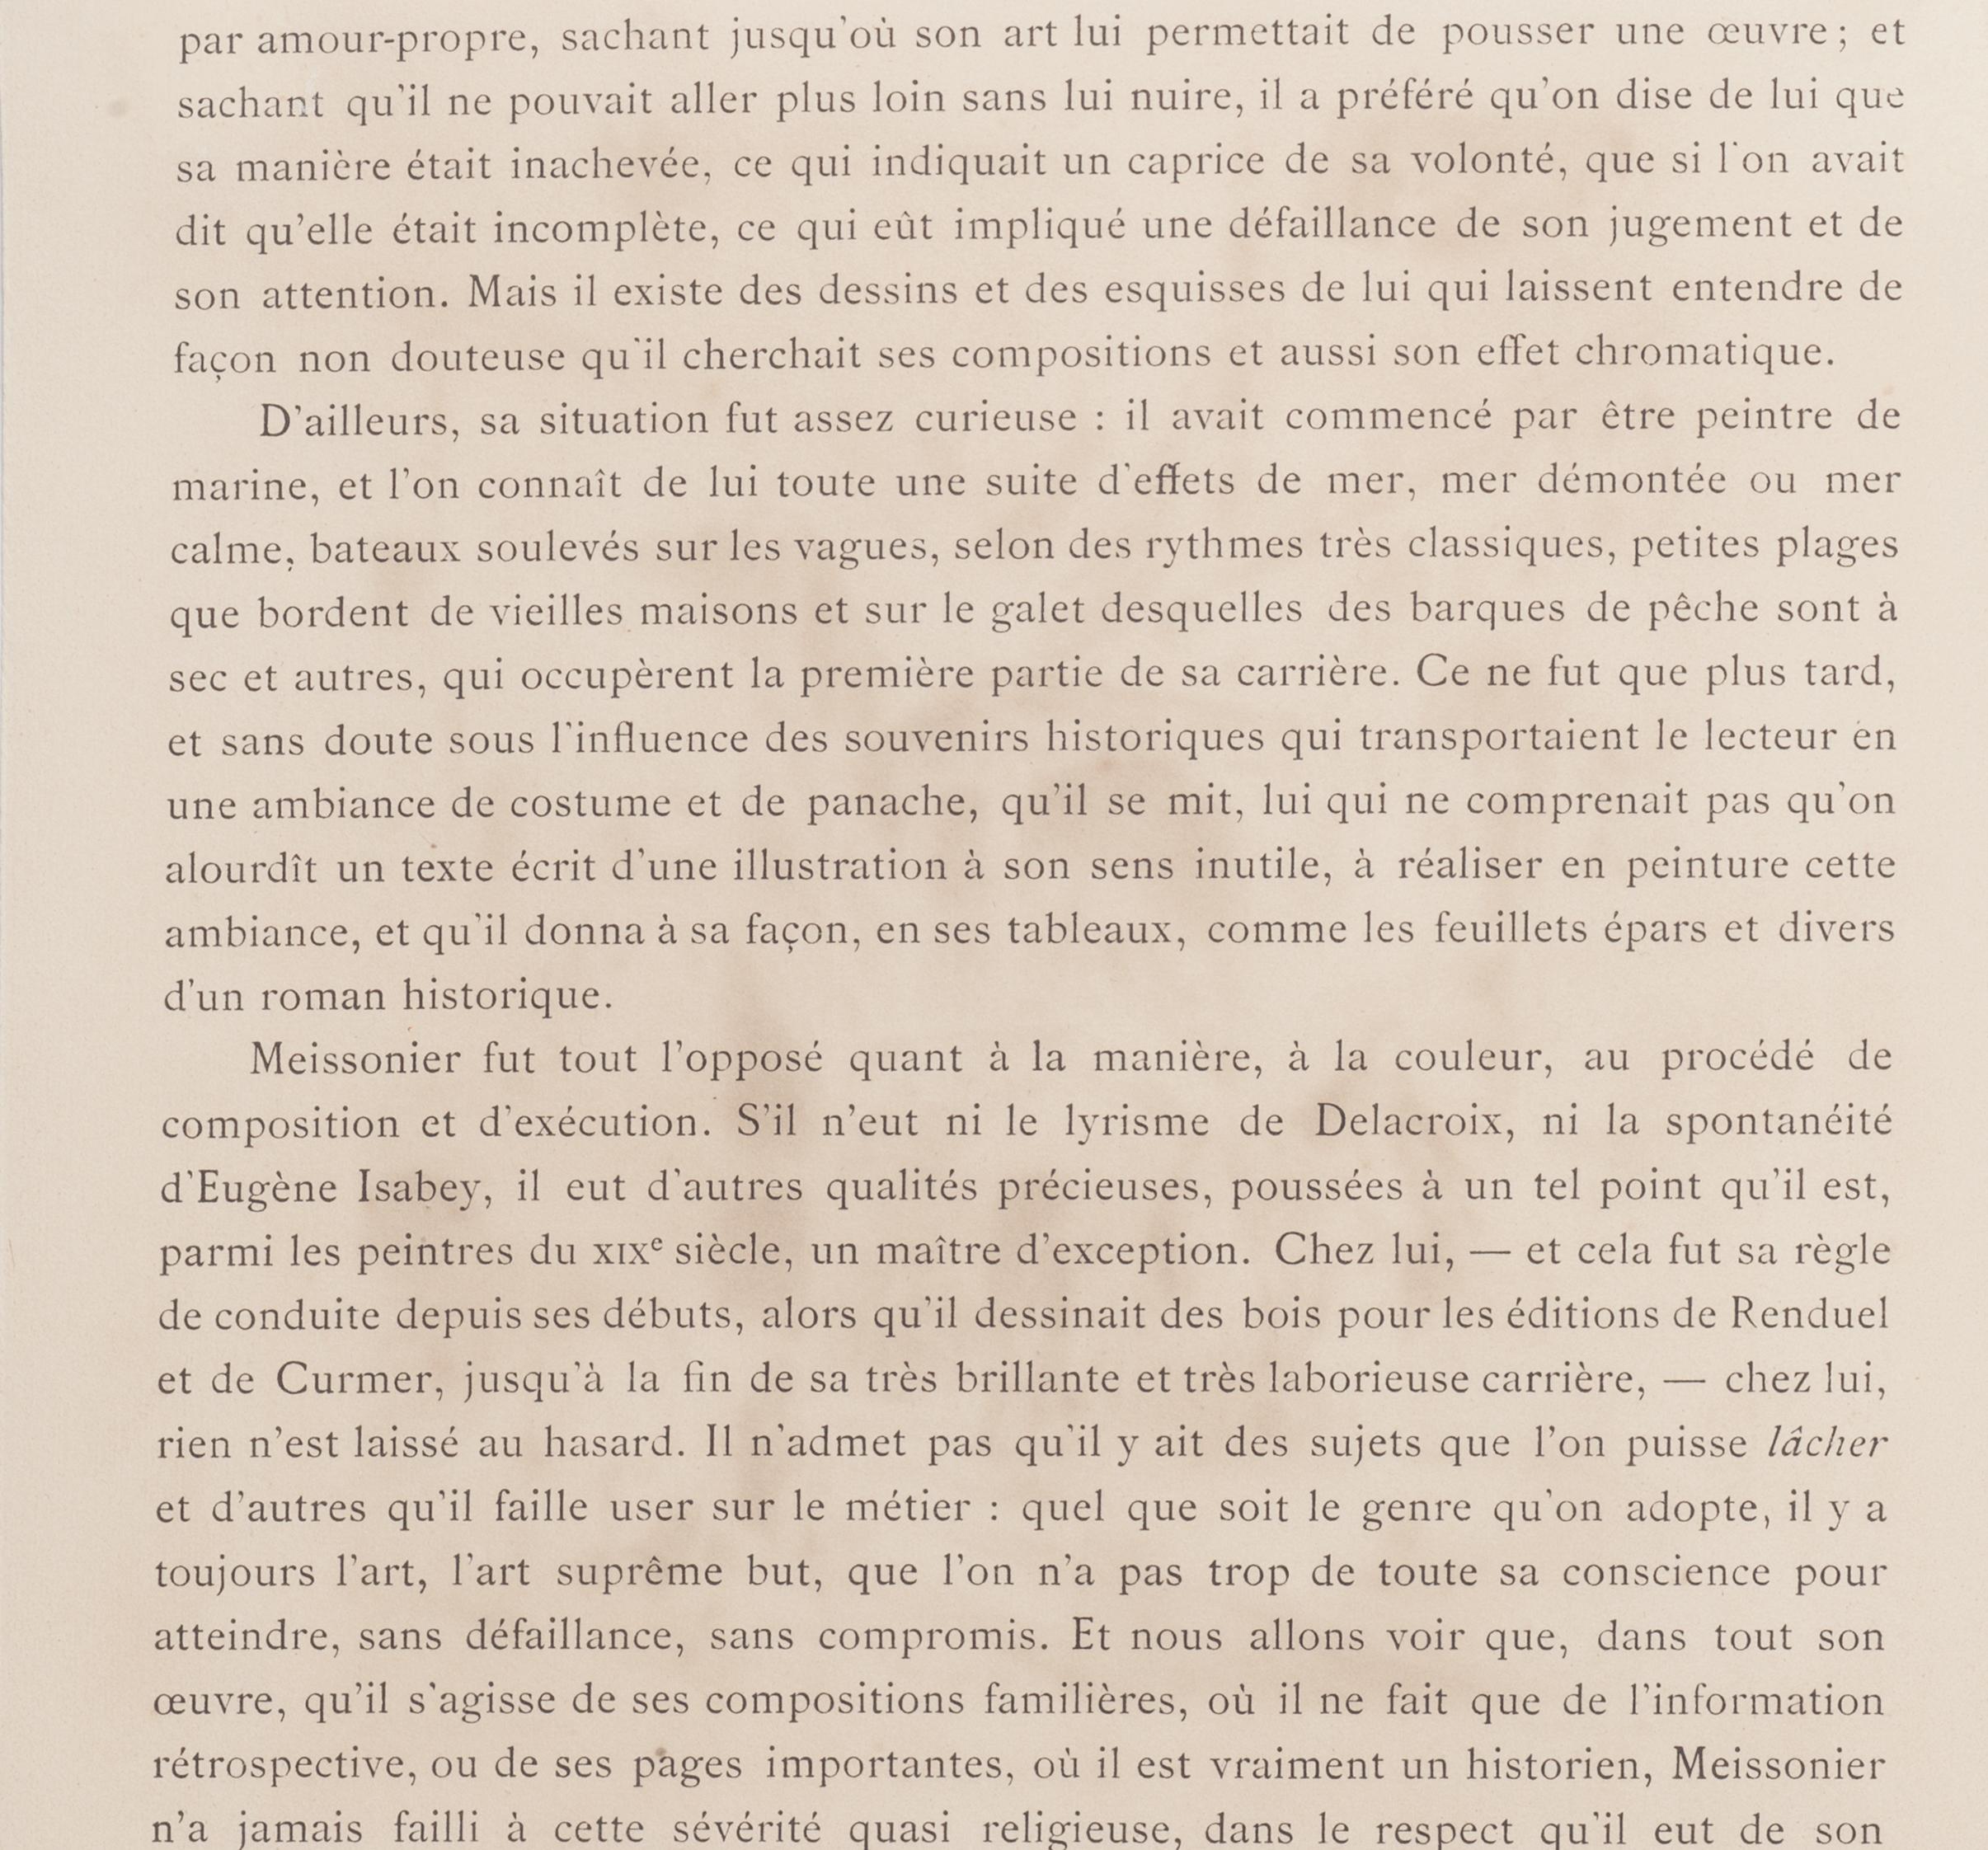 Le Message - Eau-forte originale de H.-C. Toussaint d'après E. Isabey - 1880 - Print de Henri-Charles Toussaint